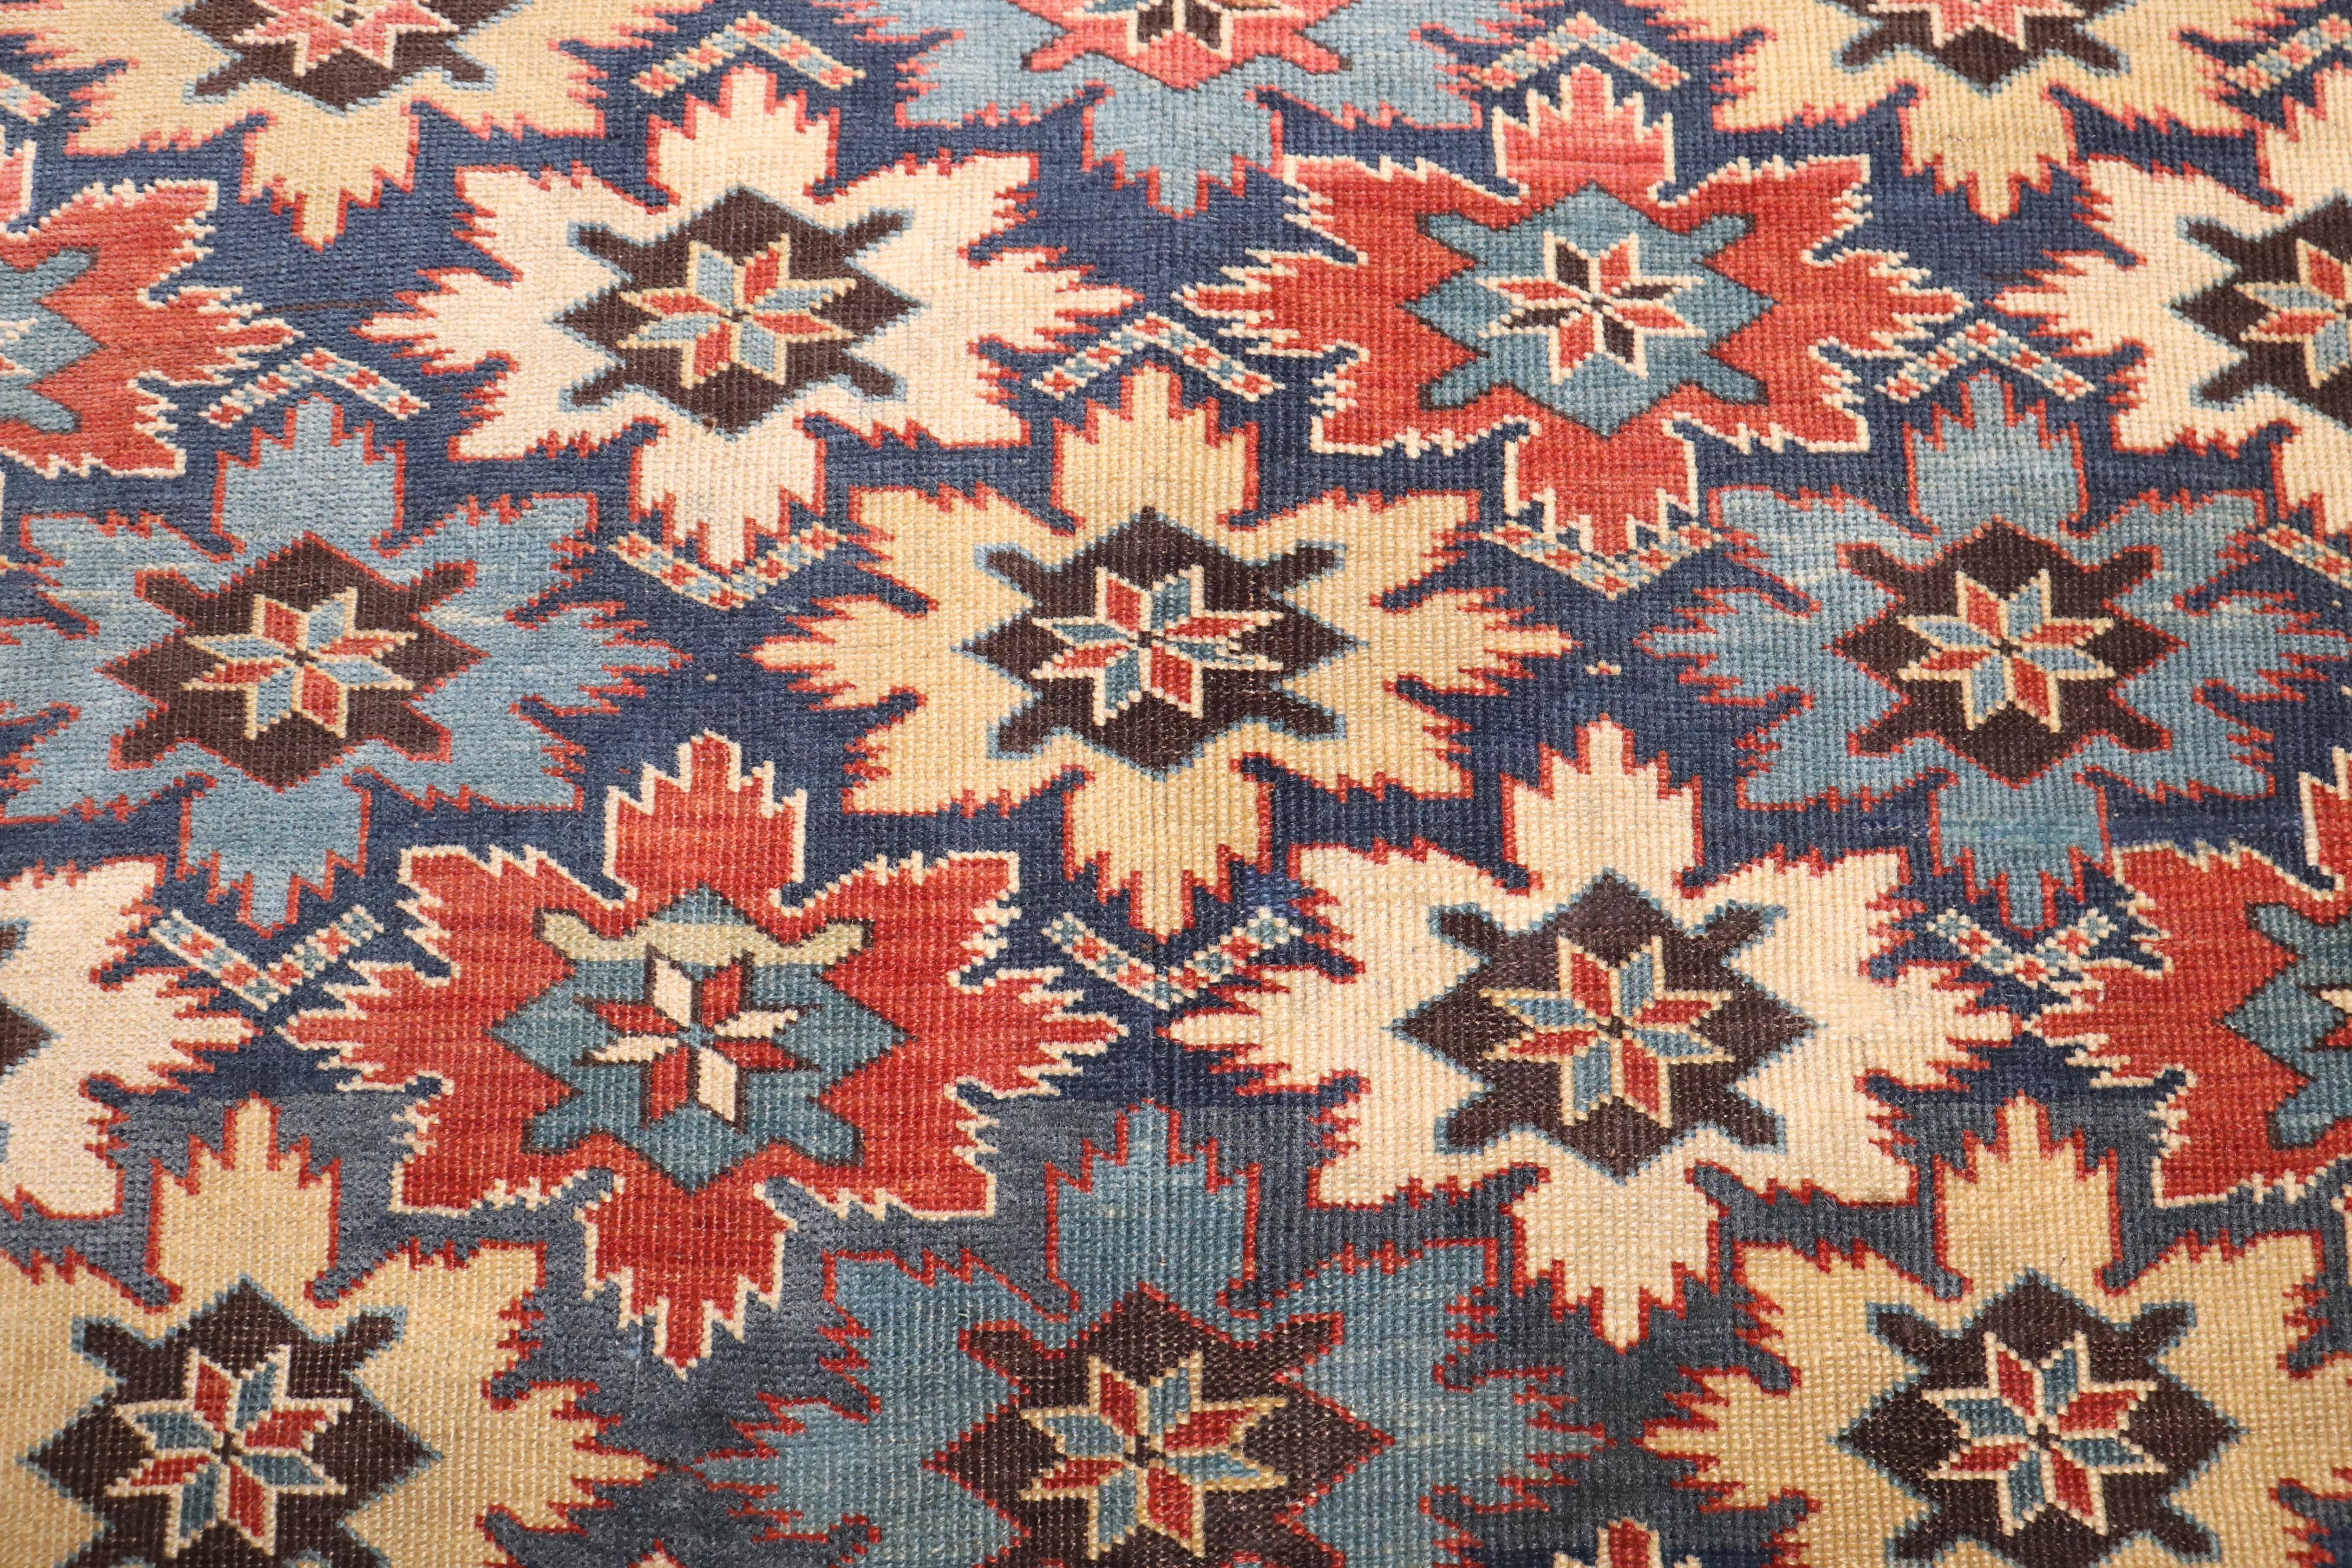 Superbe tapis ancien rKuba du Caucase datant de la fin du 19e siècle, avec un rare motif de flocons de neige sur tout le pourtour.

Mesures : 3'2